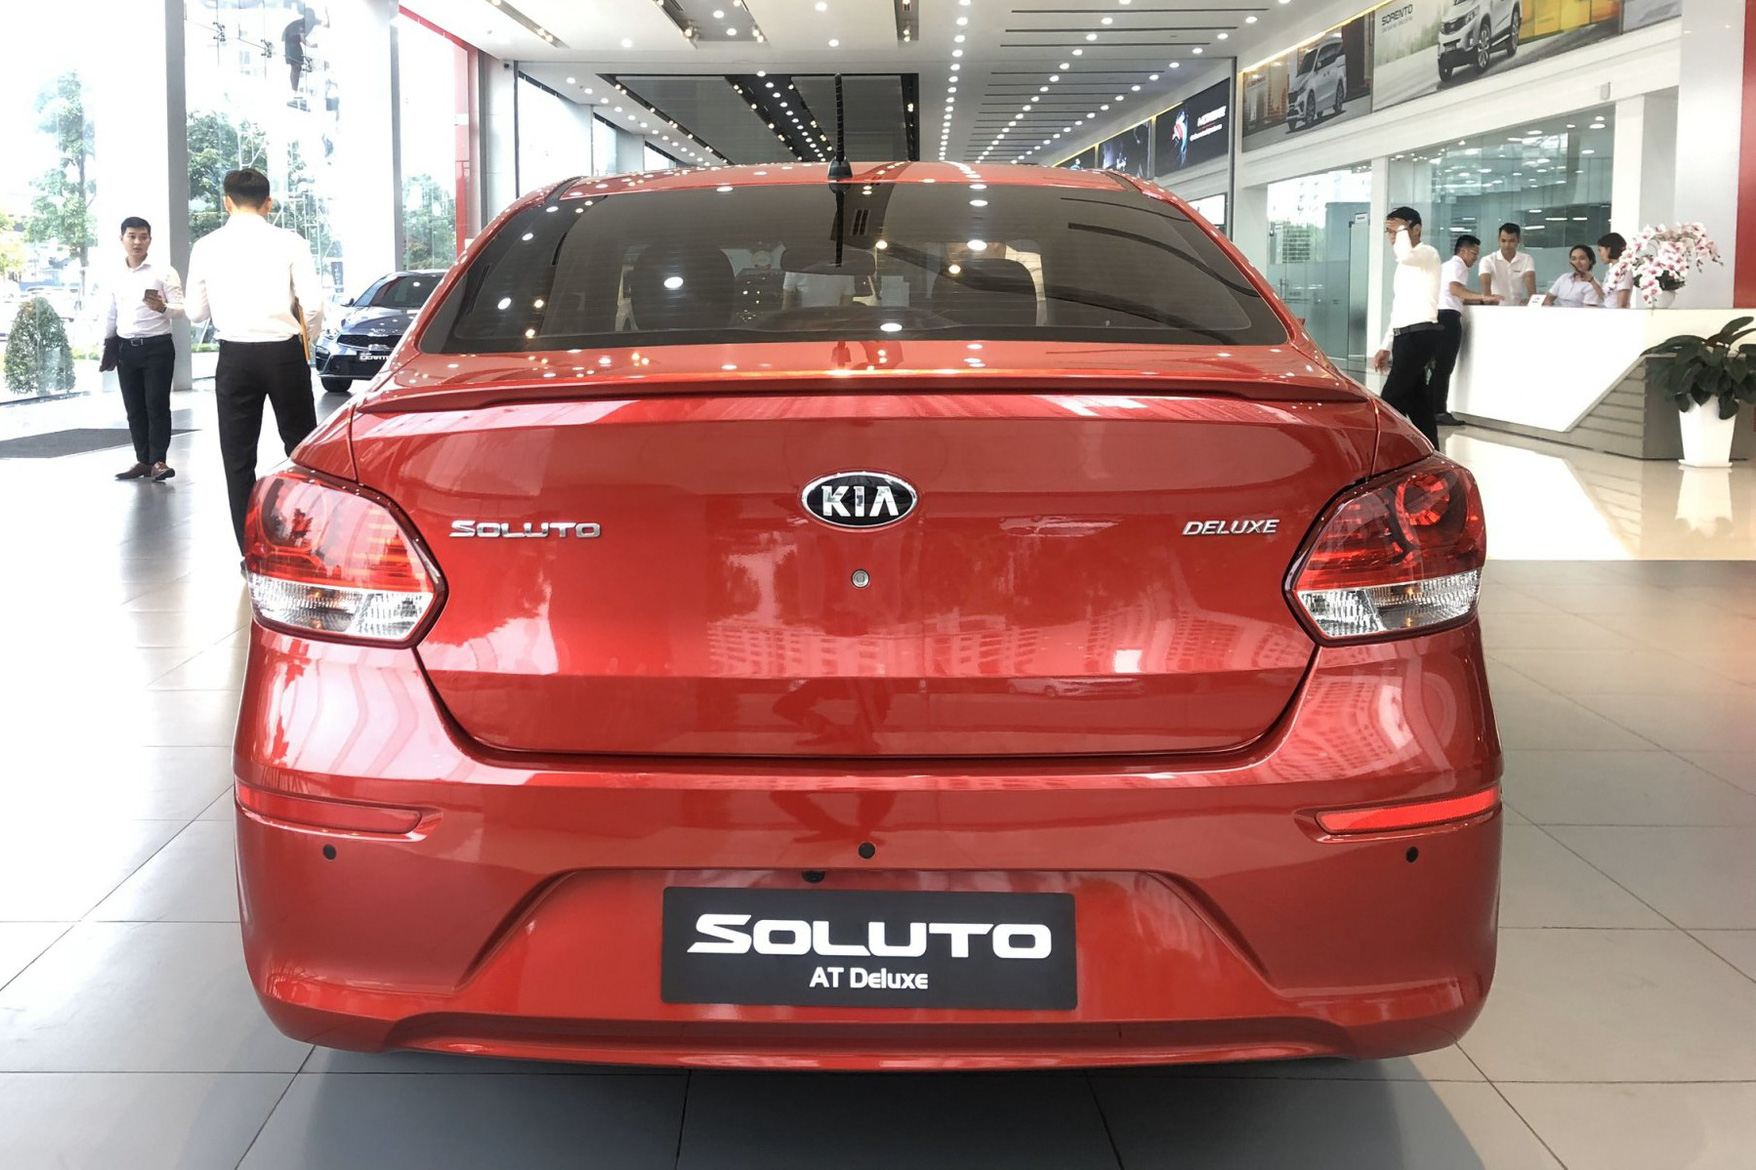 Kia Soluto 2020 đáp trả Mitsubishi Attrage bằng phiên bản mới giá 499 triệu đồng, thêm nhiều trang bị đắt giá - Ảnh 3.